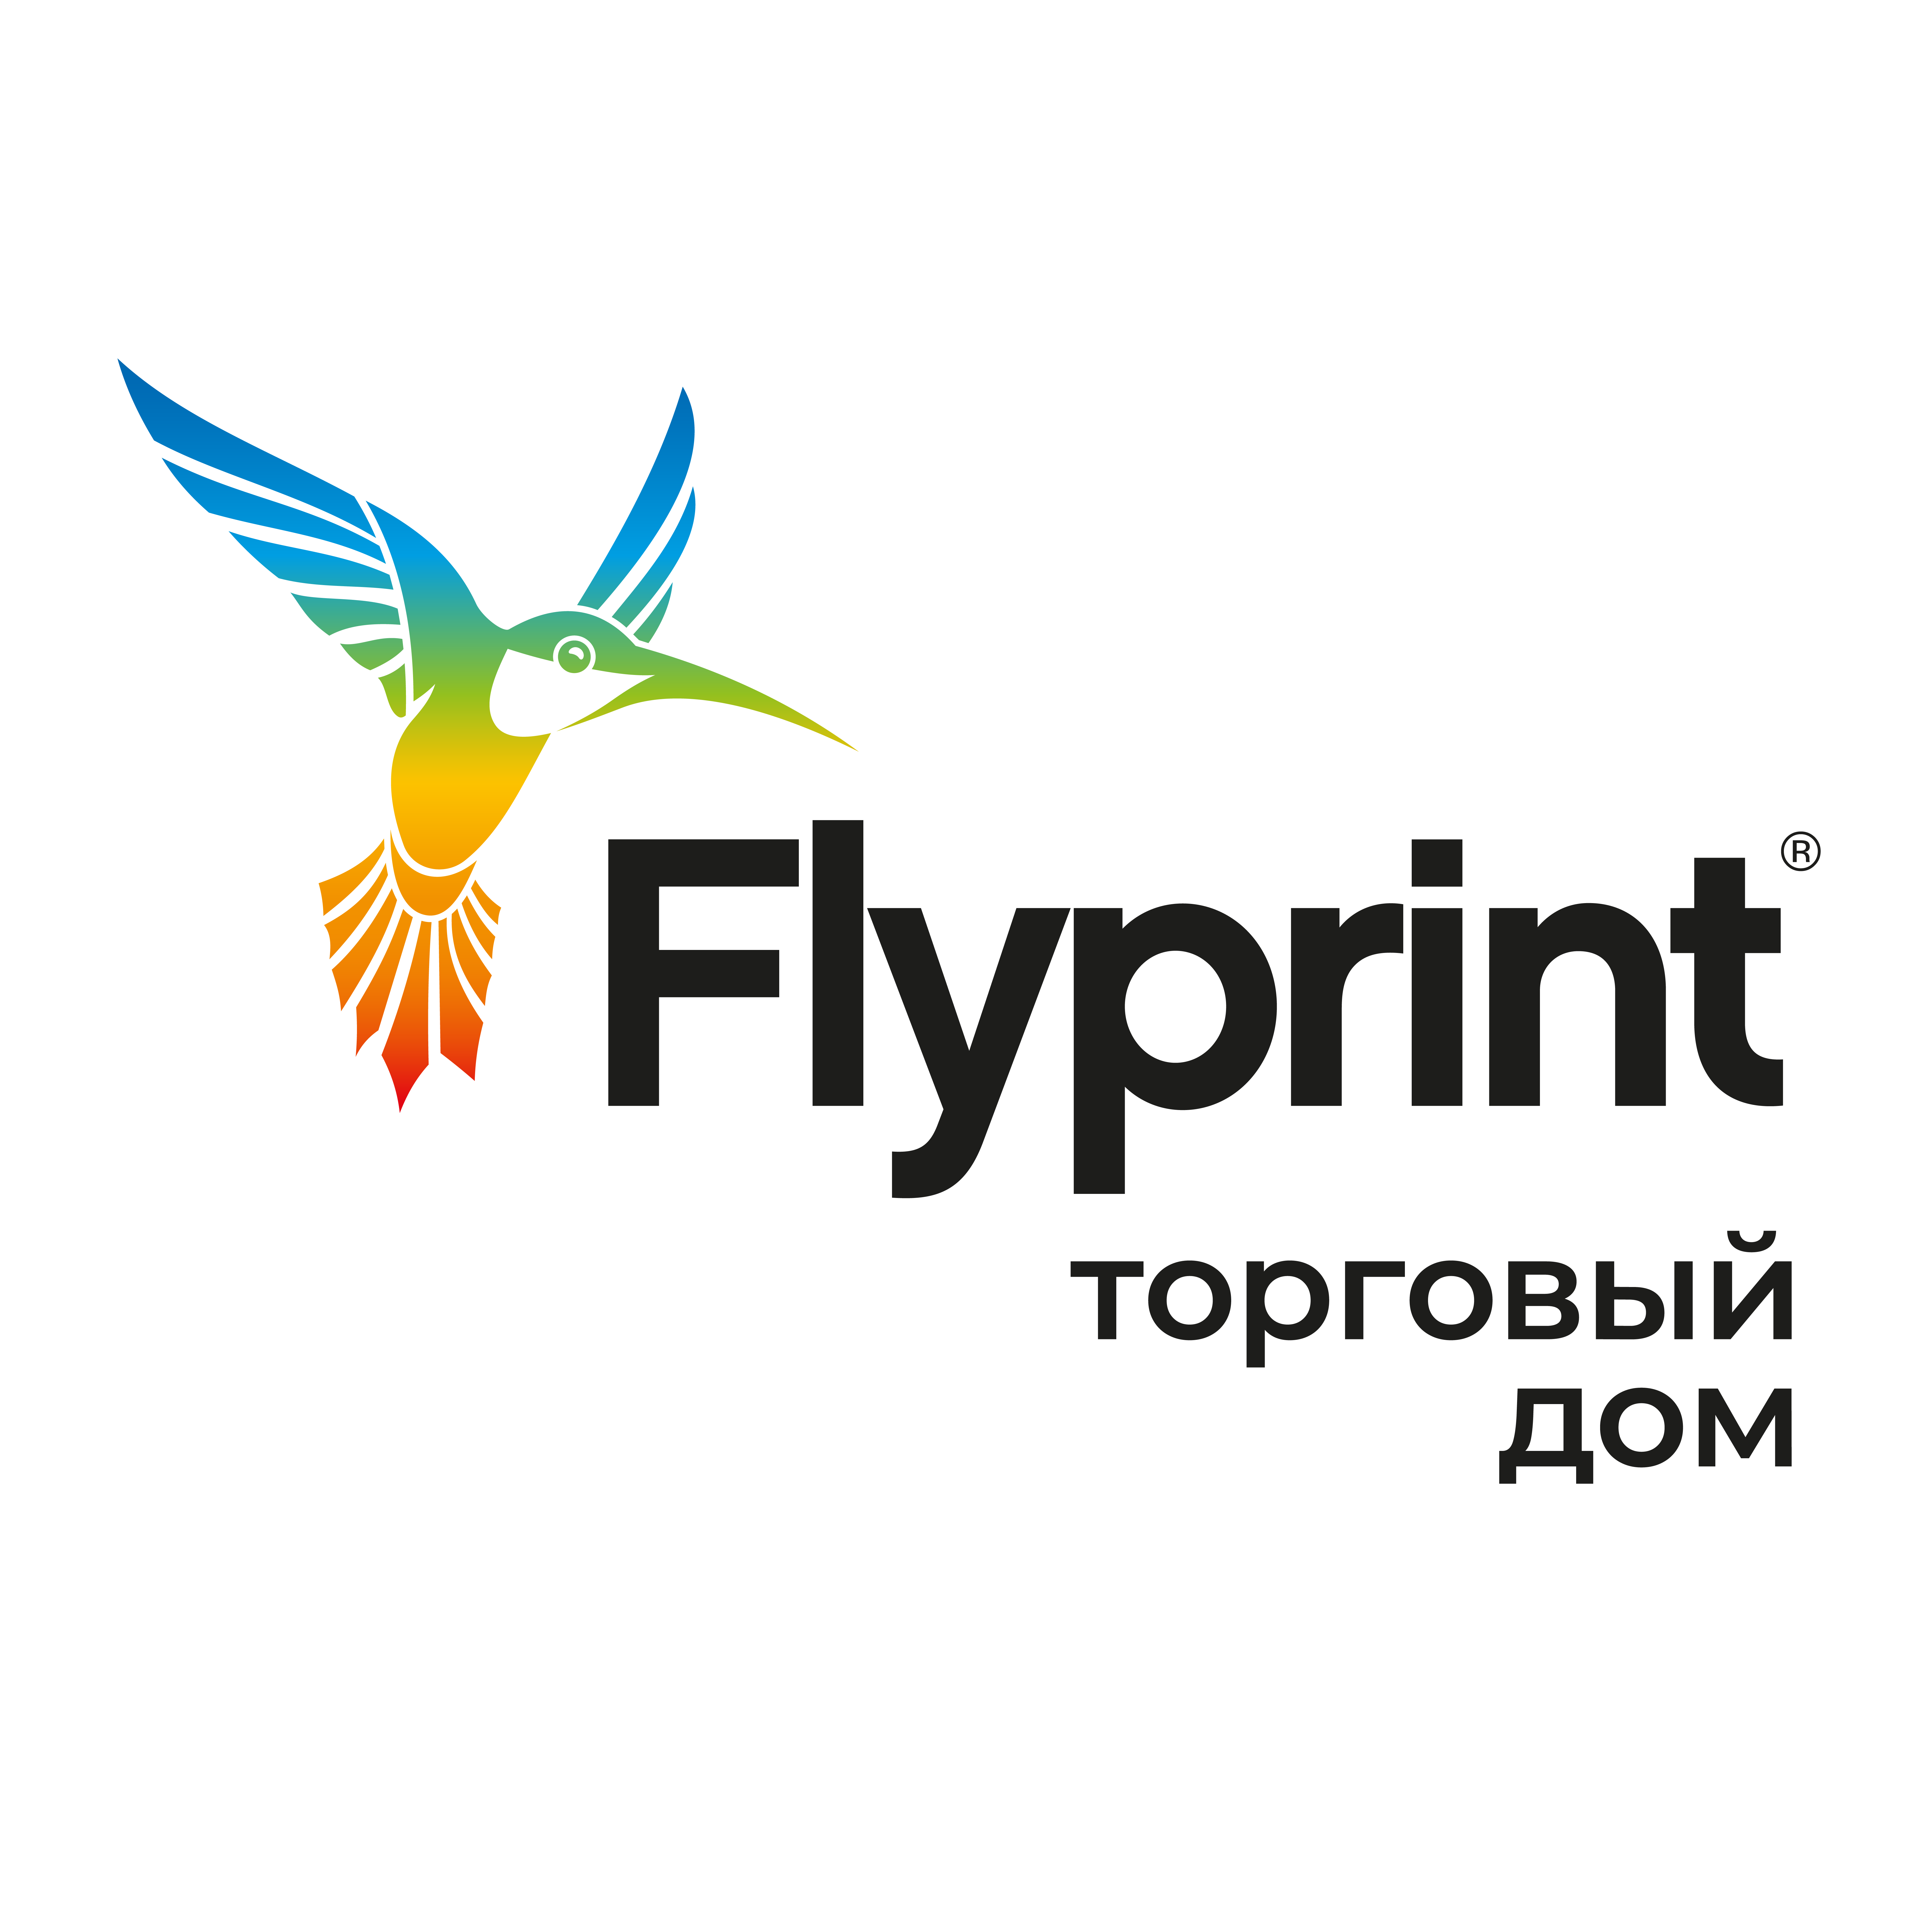 Торговый дом Flyprint